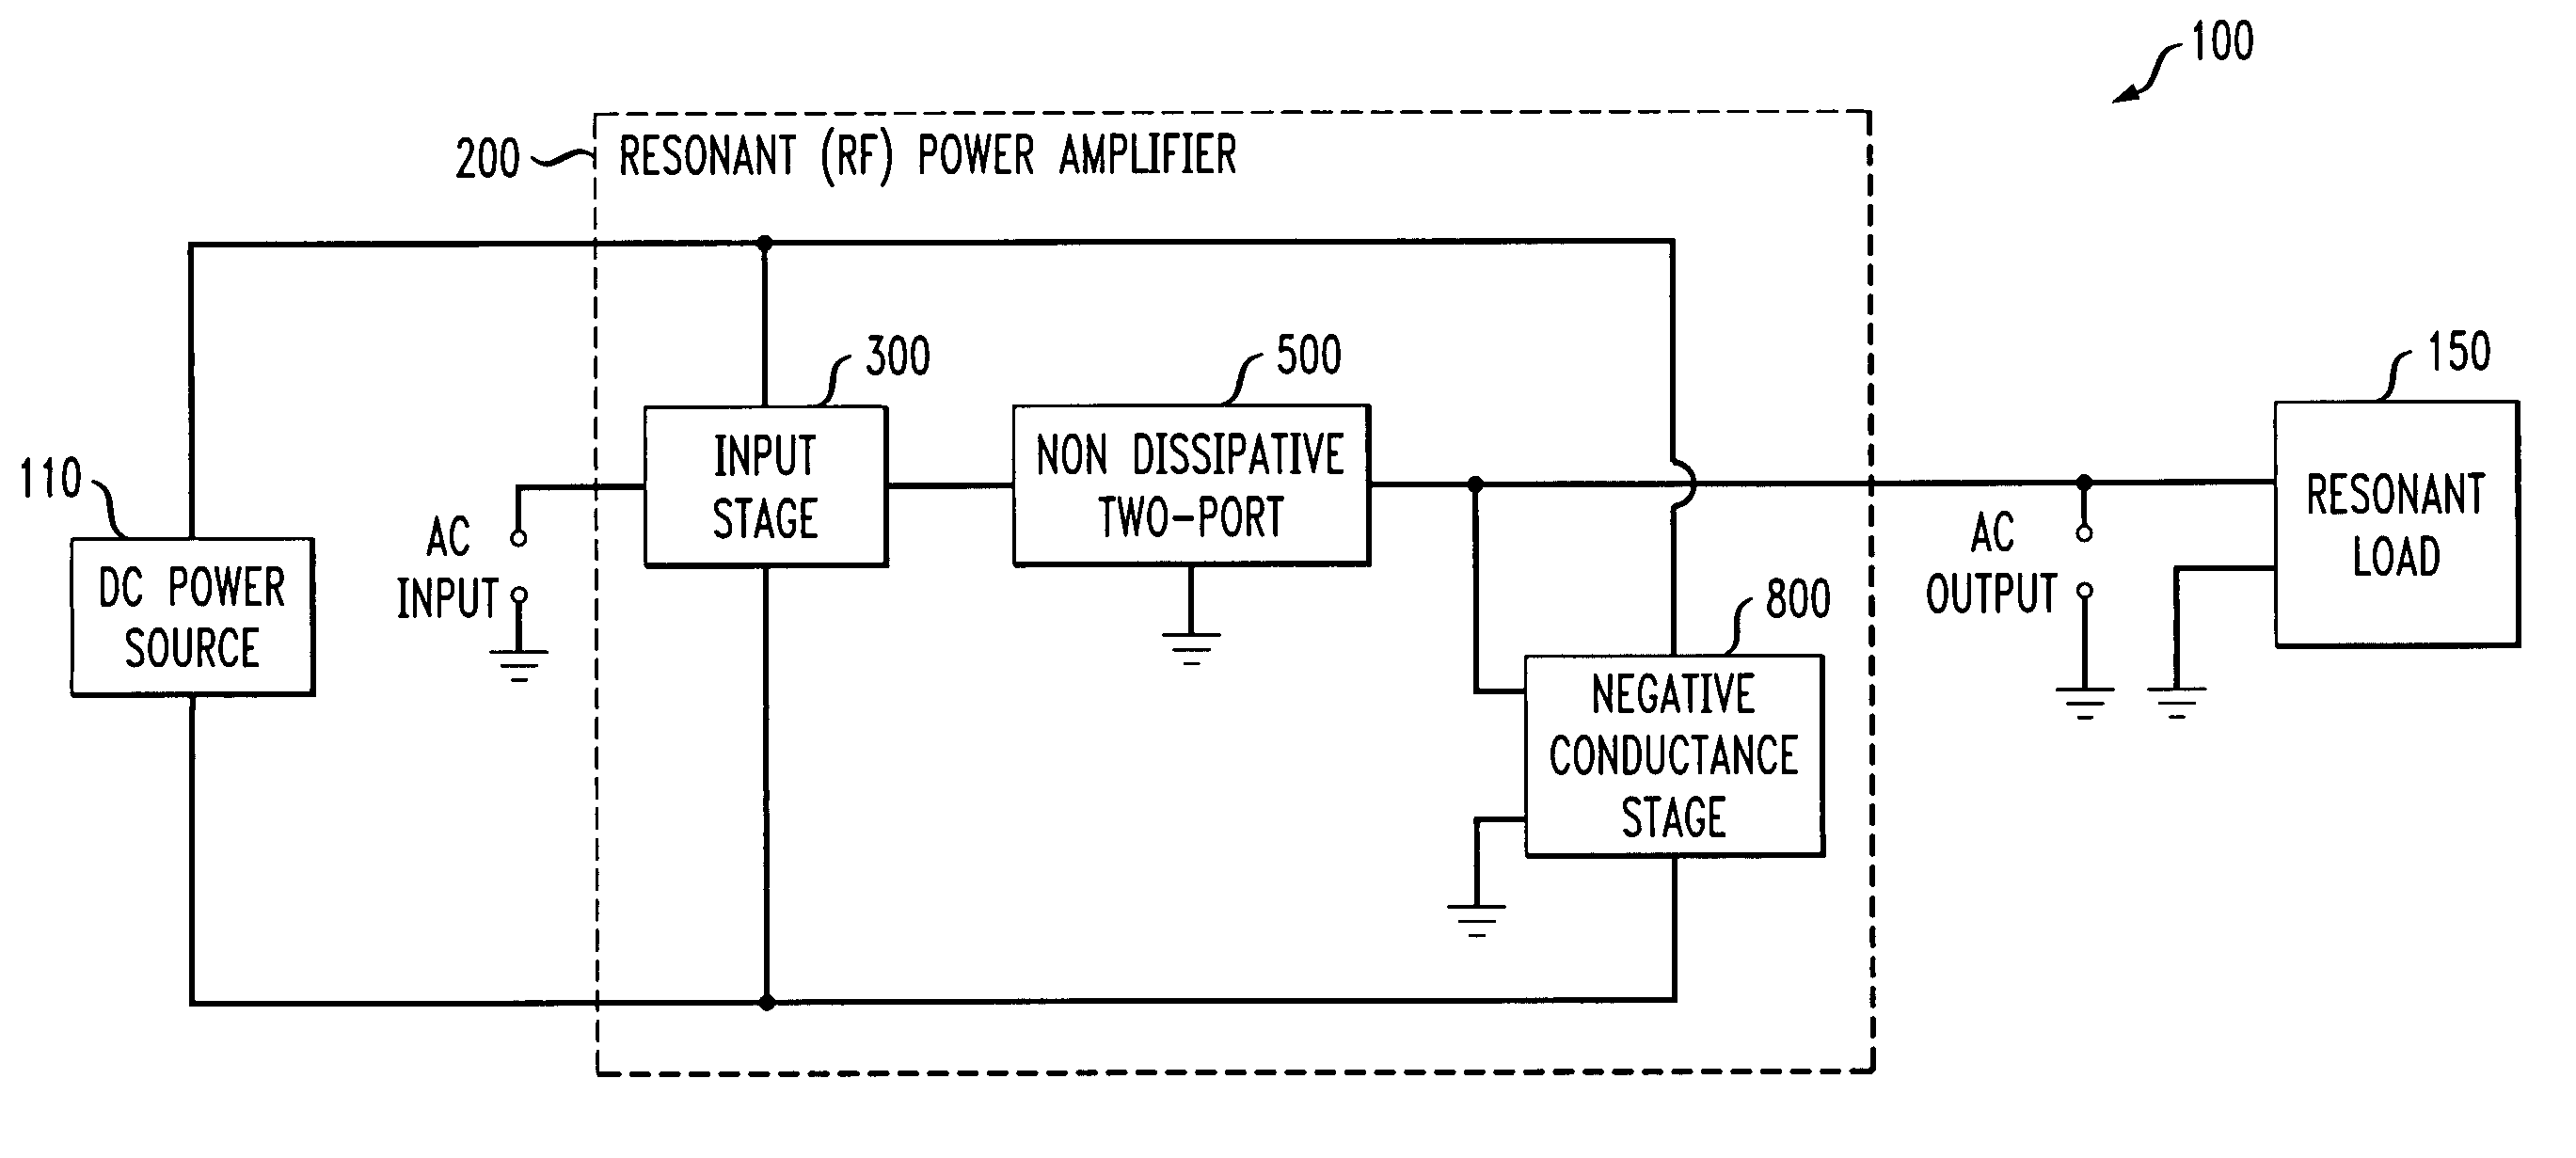 Negative conductance power amplifier